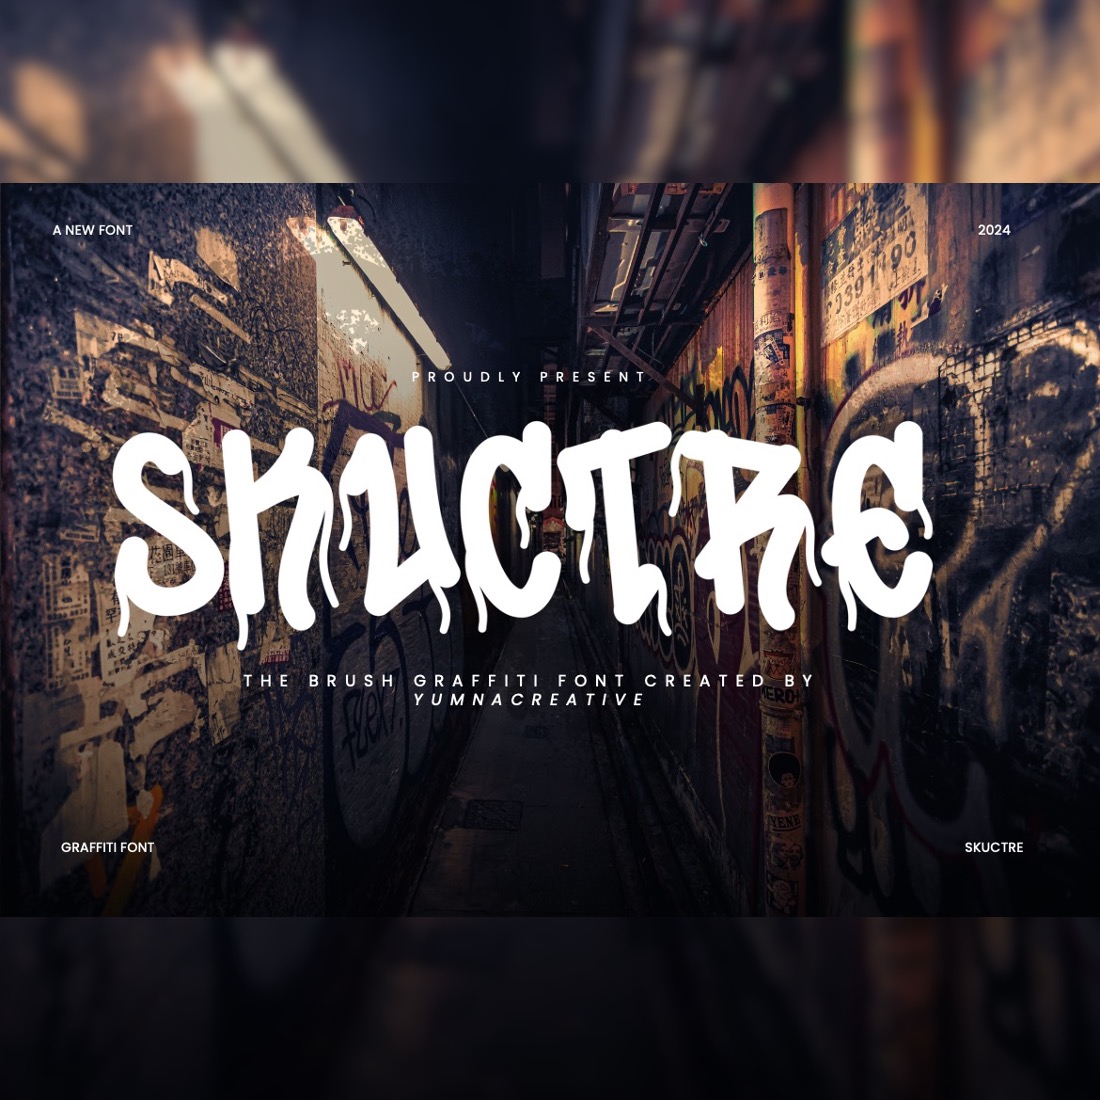 Skuctre - Brush Graffiti Font cover image.